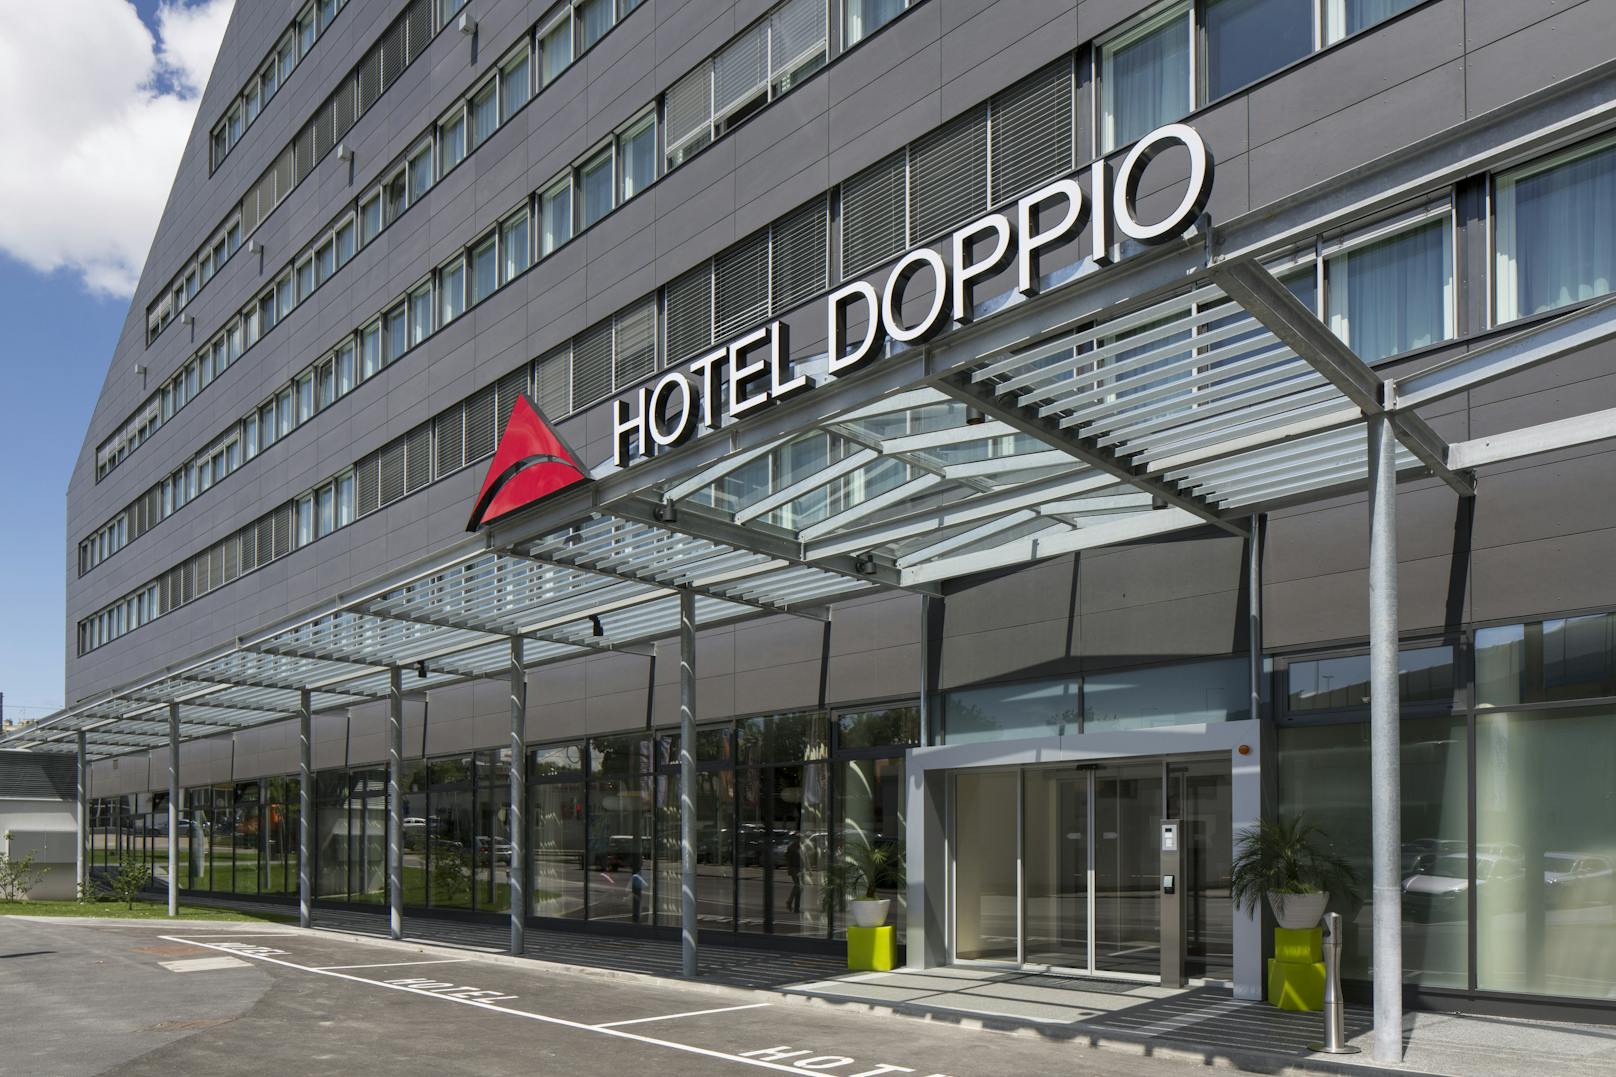 Austria Trend Hotel Doppio&nbsp;